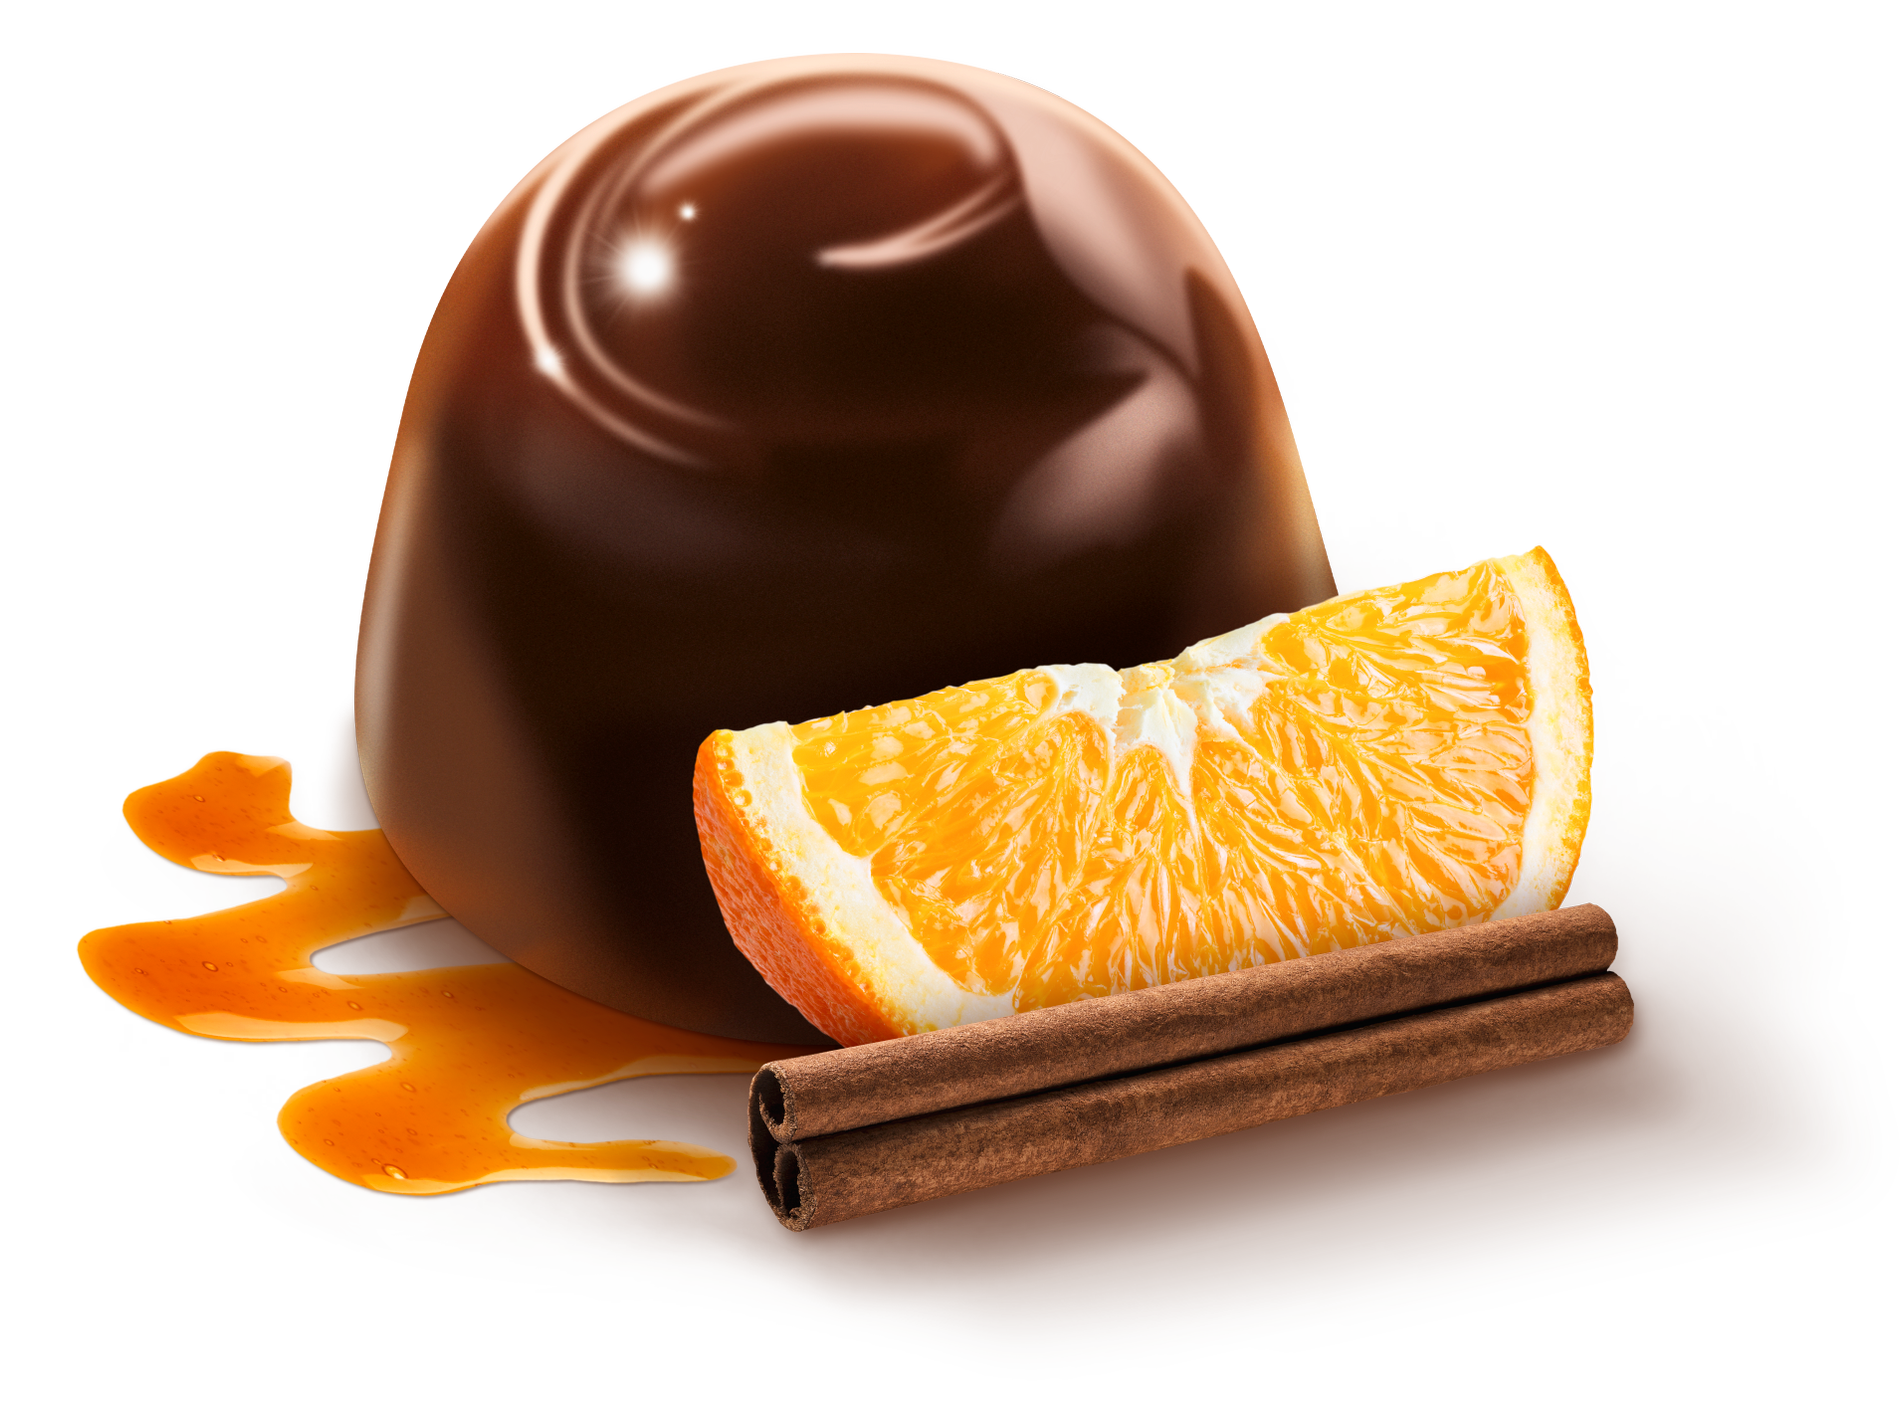 Den nya smaken för i år är apelsinkanel. 